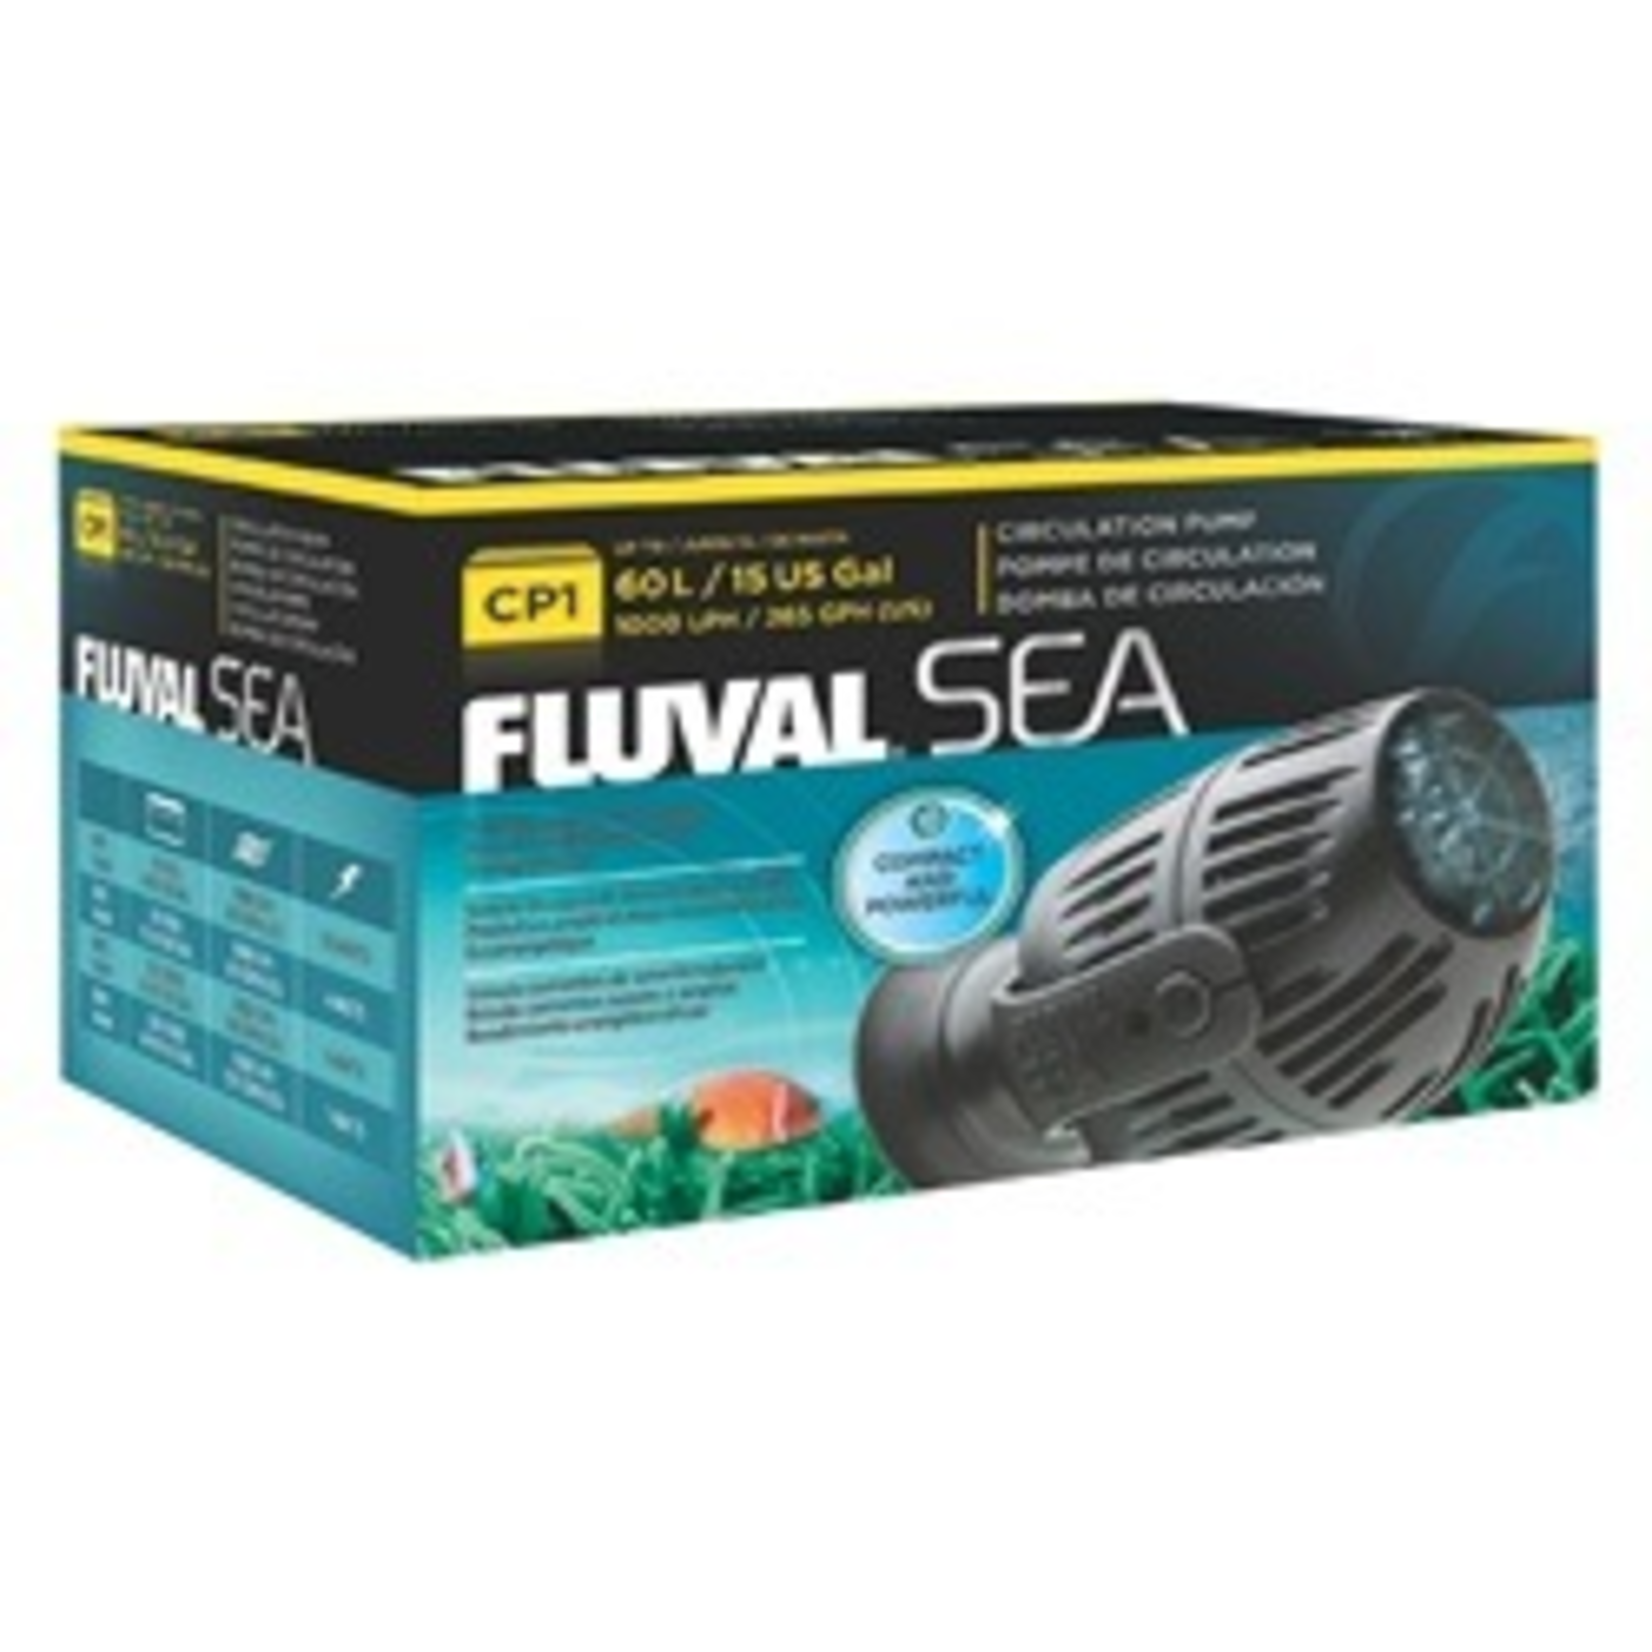 FLUVAL (W) Fluval Sea Aquarium Circulation Pump (CP1), 3.5W, 1000 LPH (265 GPH)